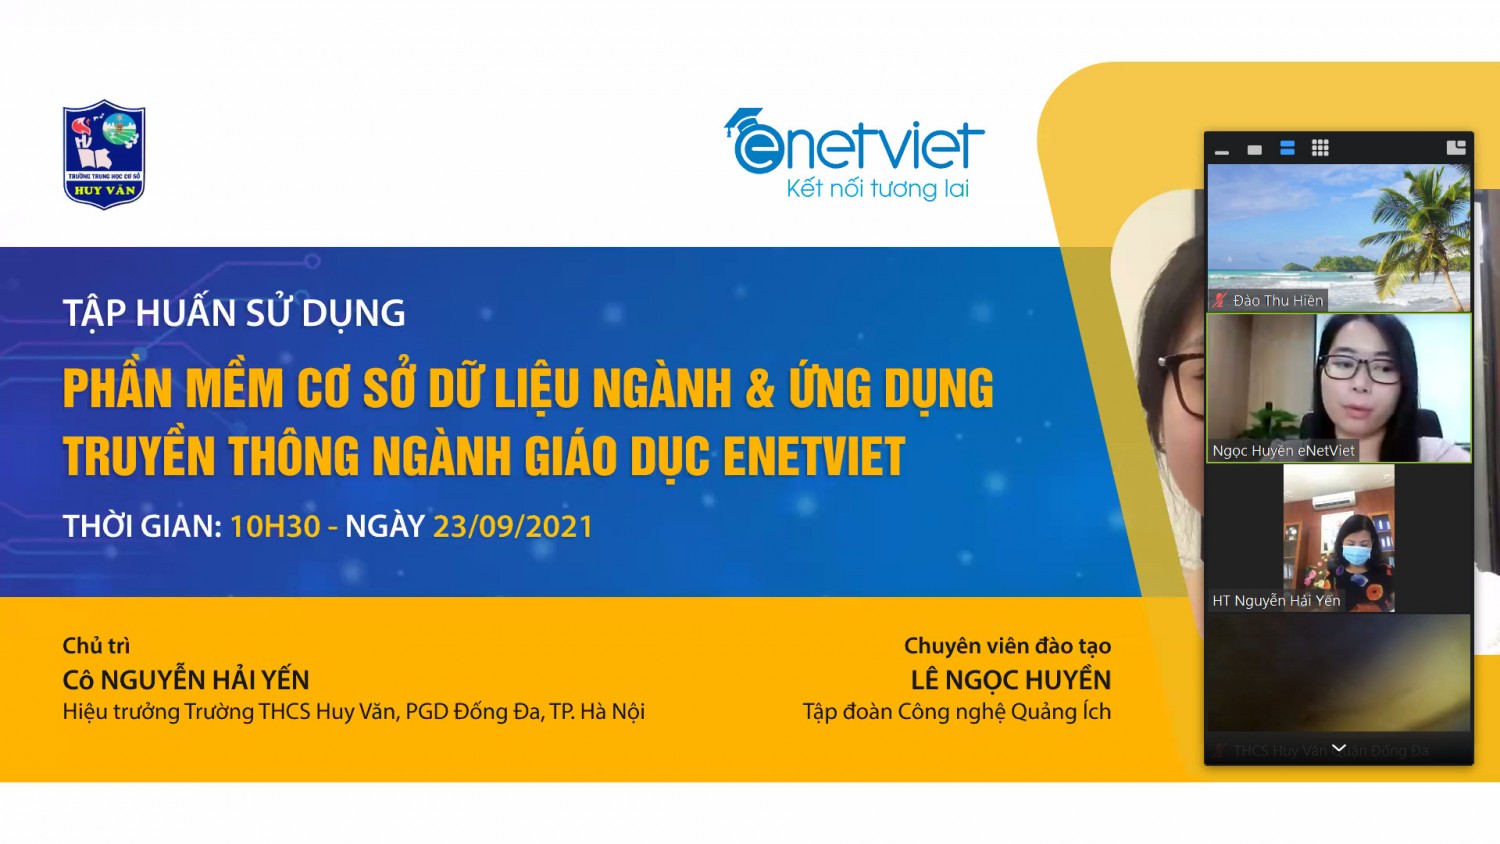 Ngày 23/9/2021 Trường THCS Huy Văn tập huấn phần mềm eNetViet